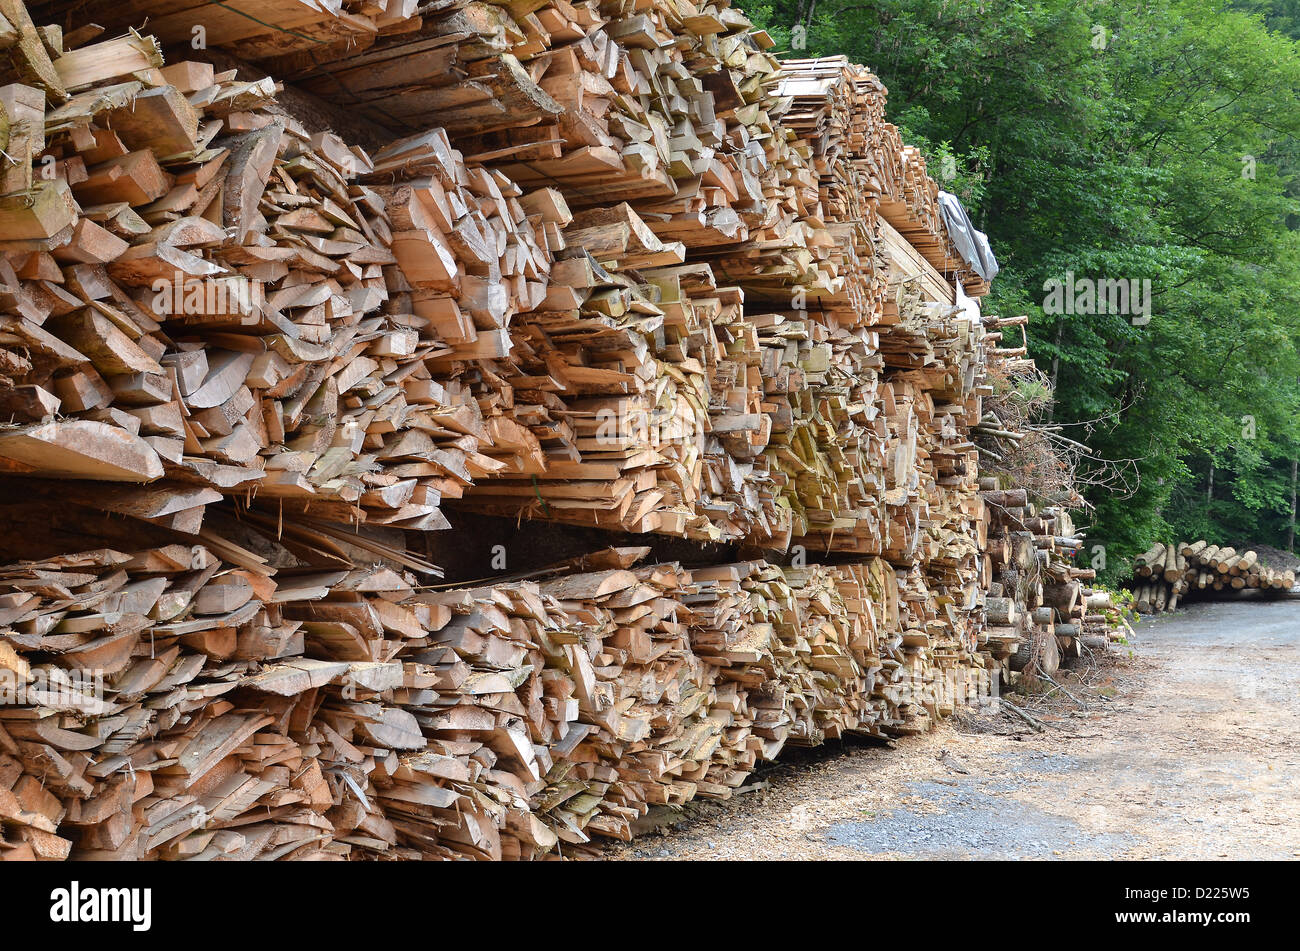 Grandi lunghezze delle talee di legno e gli avanzi di segheria, impilate in su e in attesa di raccolta. Foto Stock